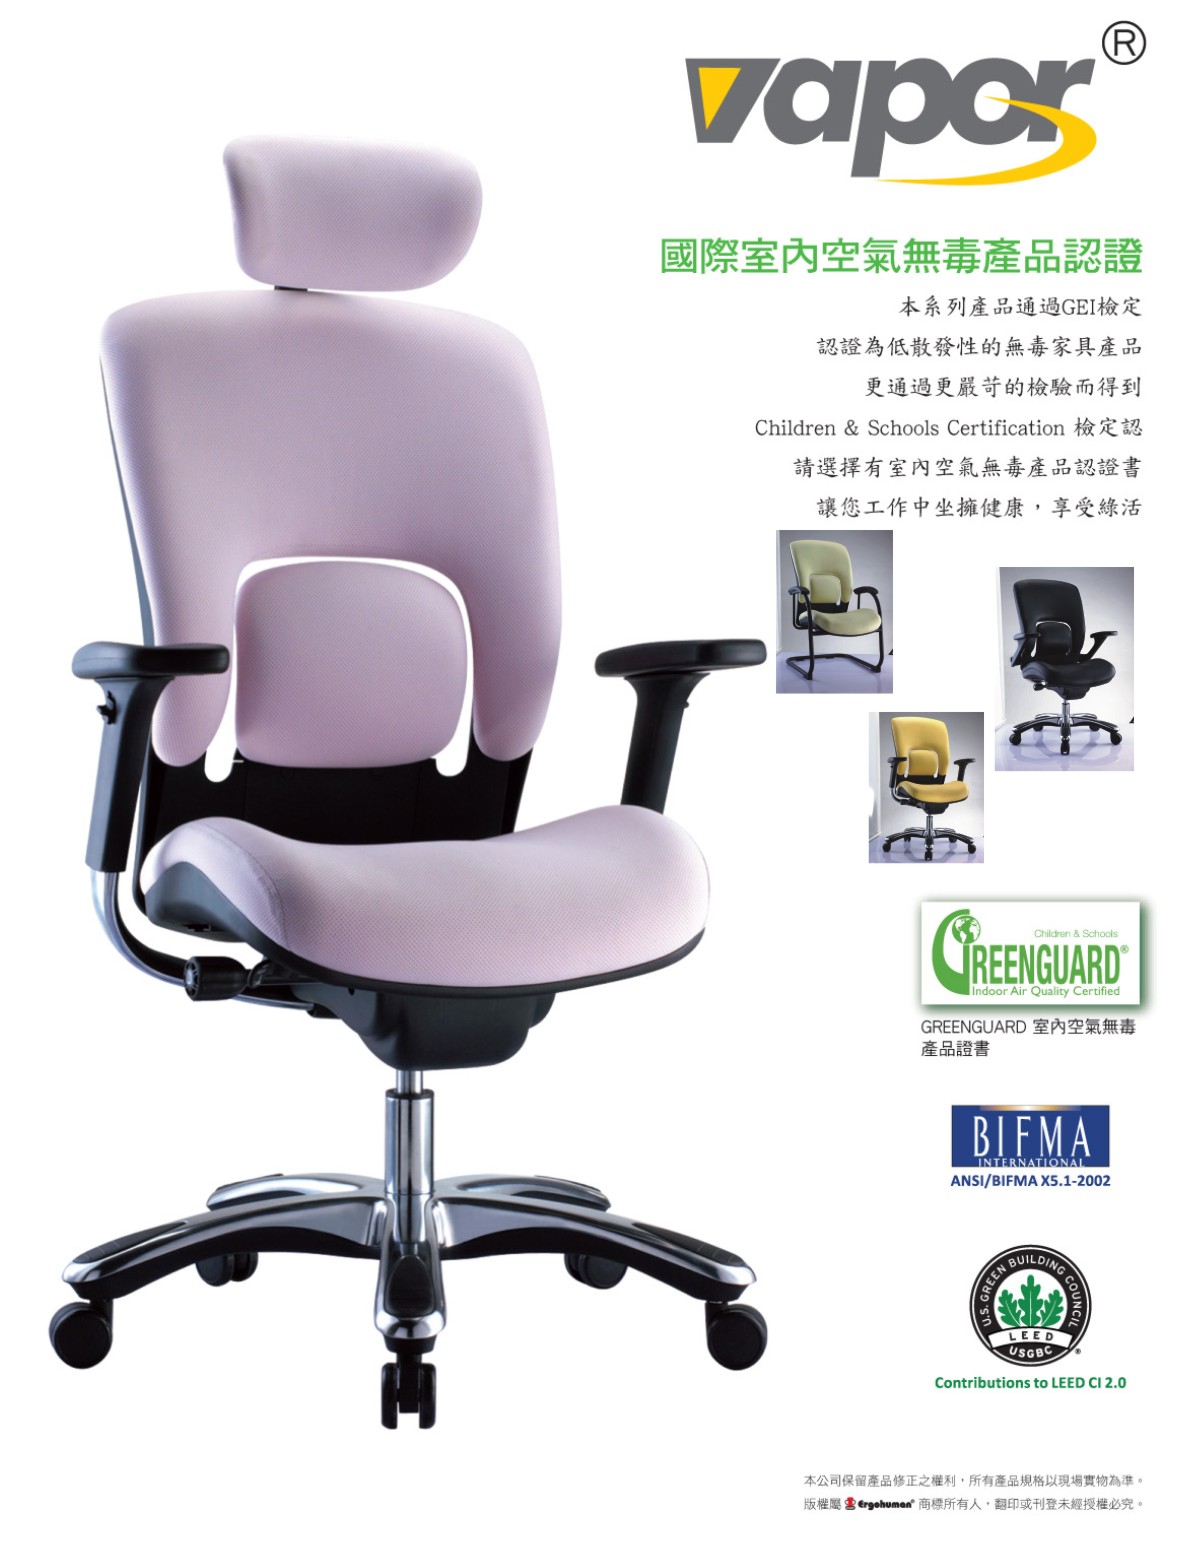 Vapor 161-人體工學椅-電腦網椅國際無毒與環保認證